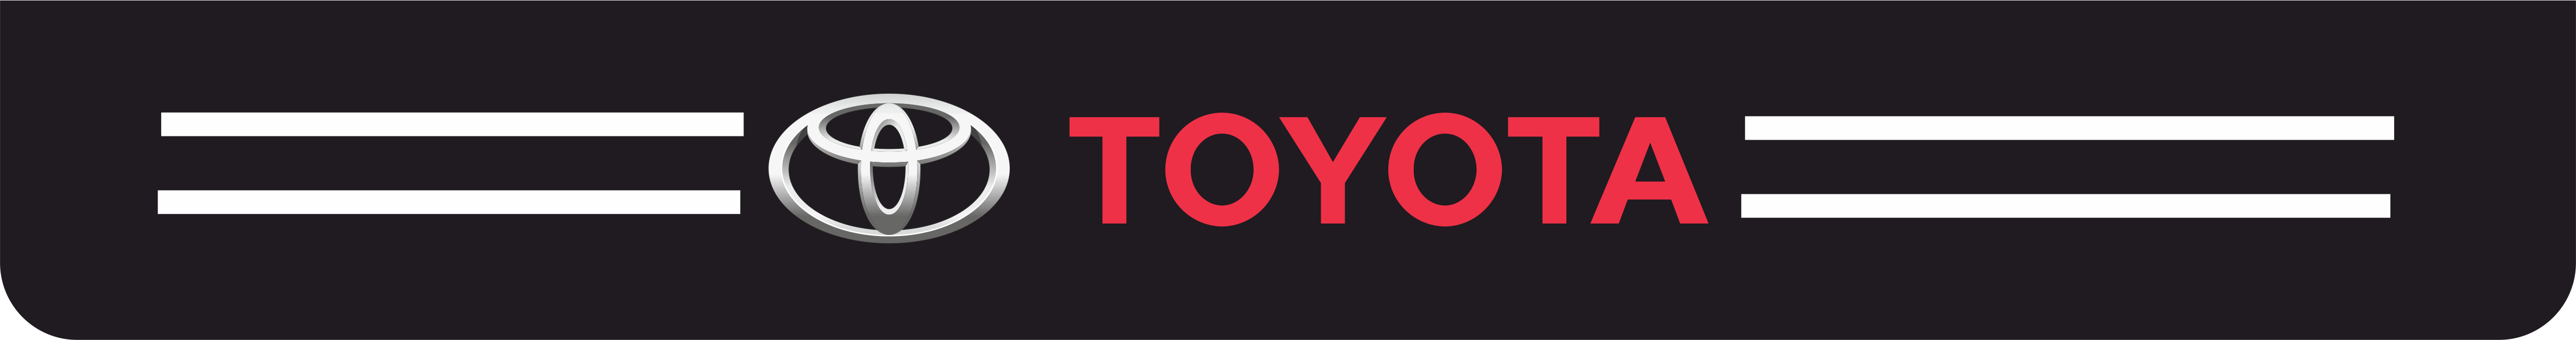 toyota - Toyota kapı eşiği sticker